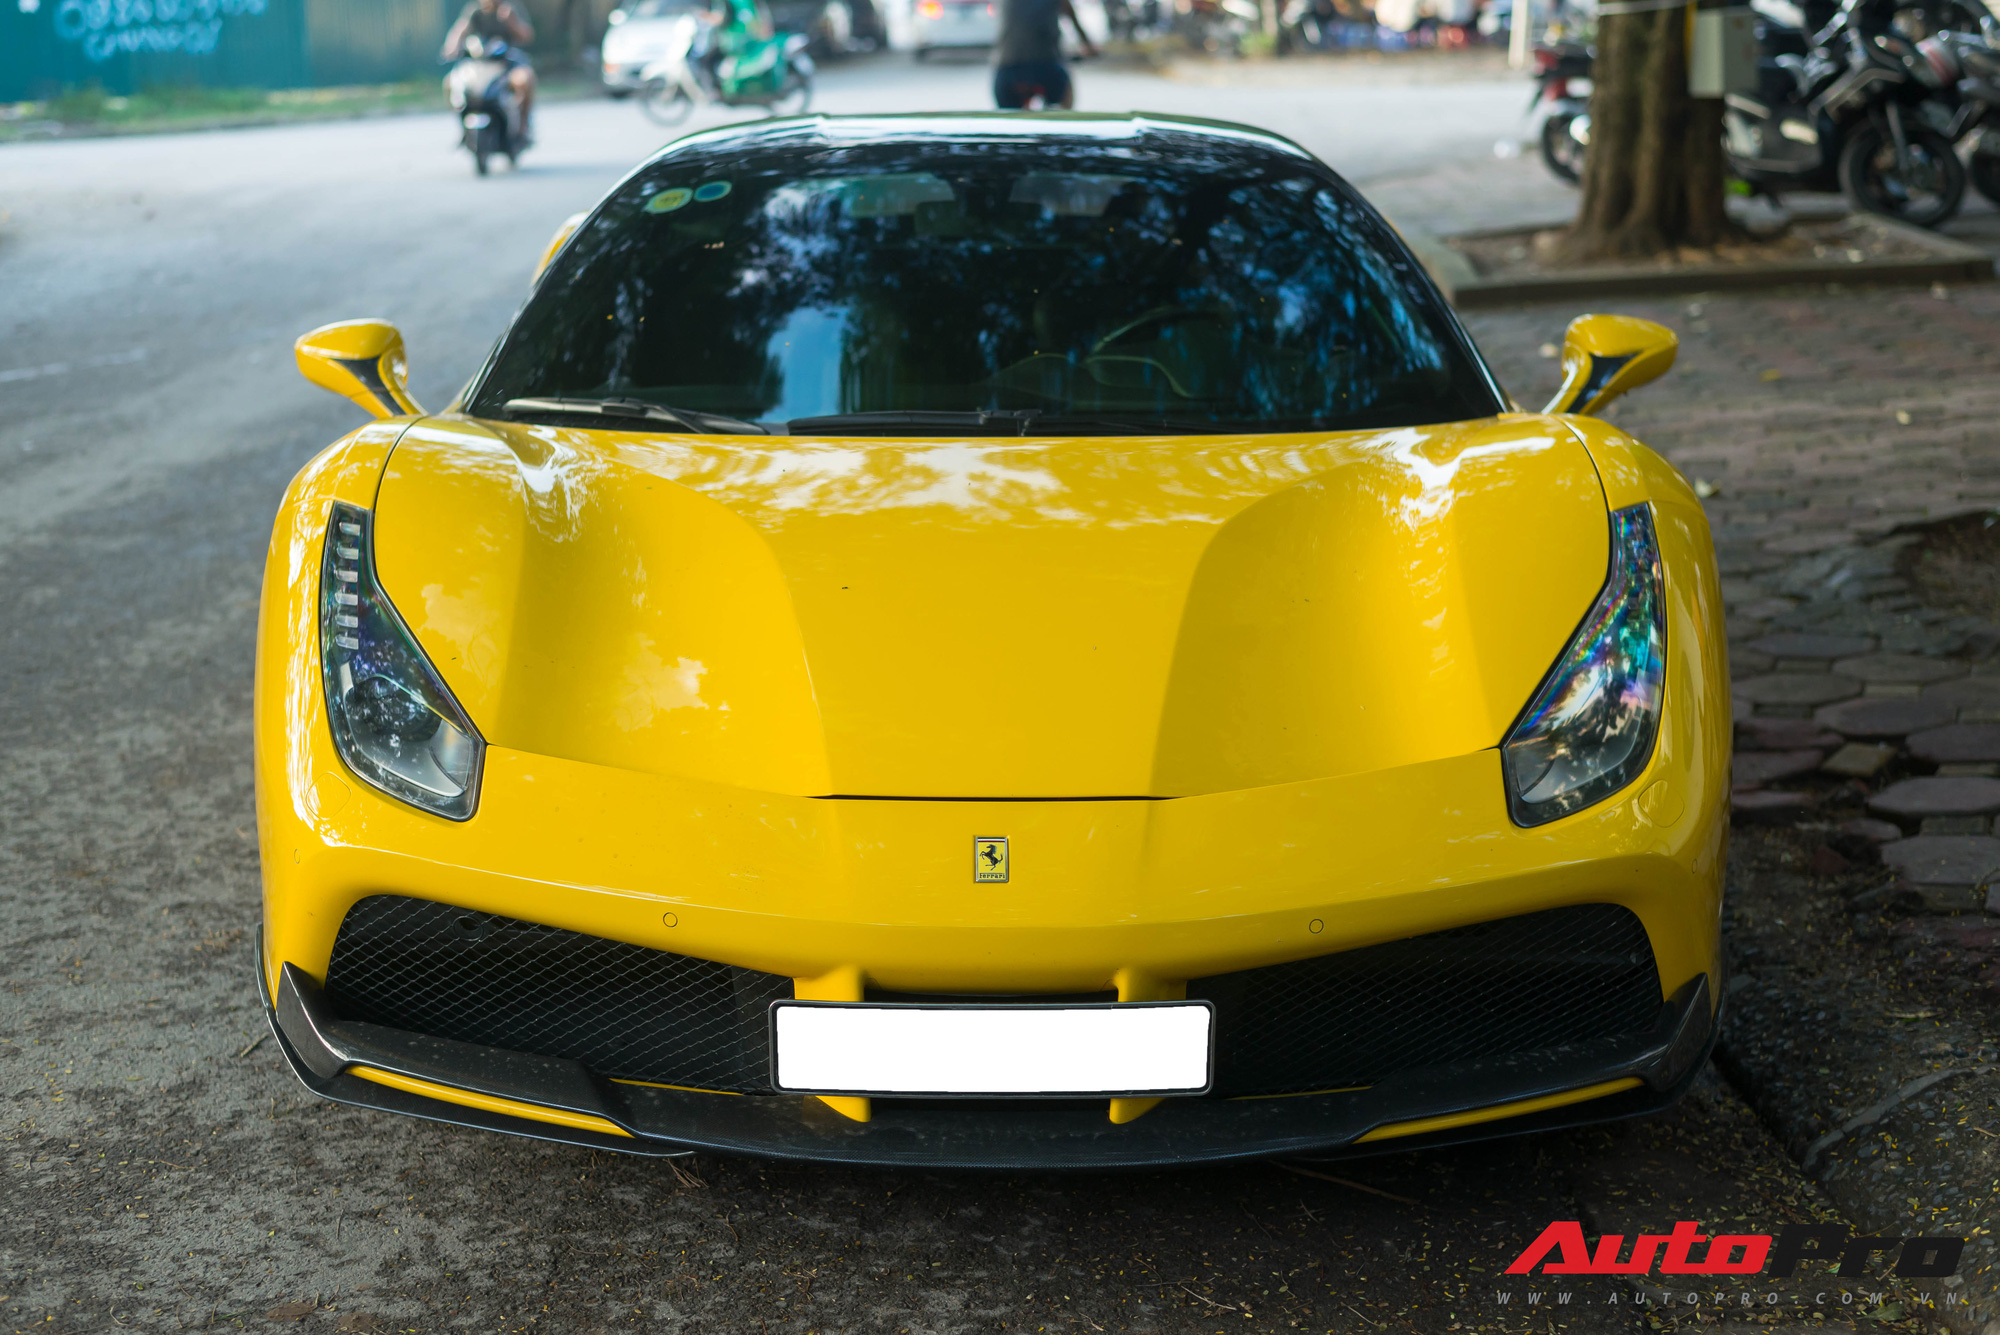 Bắt gặp Ferrari 488 GTB màu vàng độ bodykit Novitec Rosso trị giá hàng trăm triệu đồng tại Hà Nội - Ảnh 4.